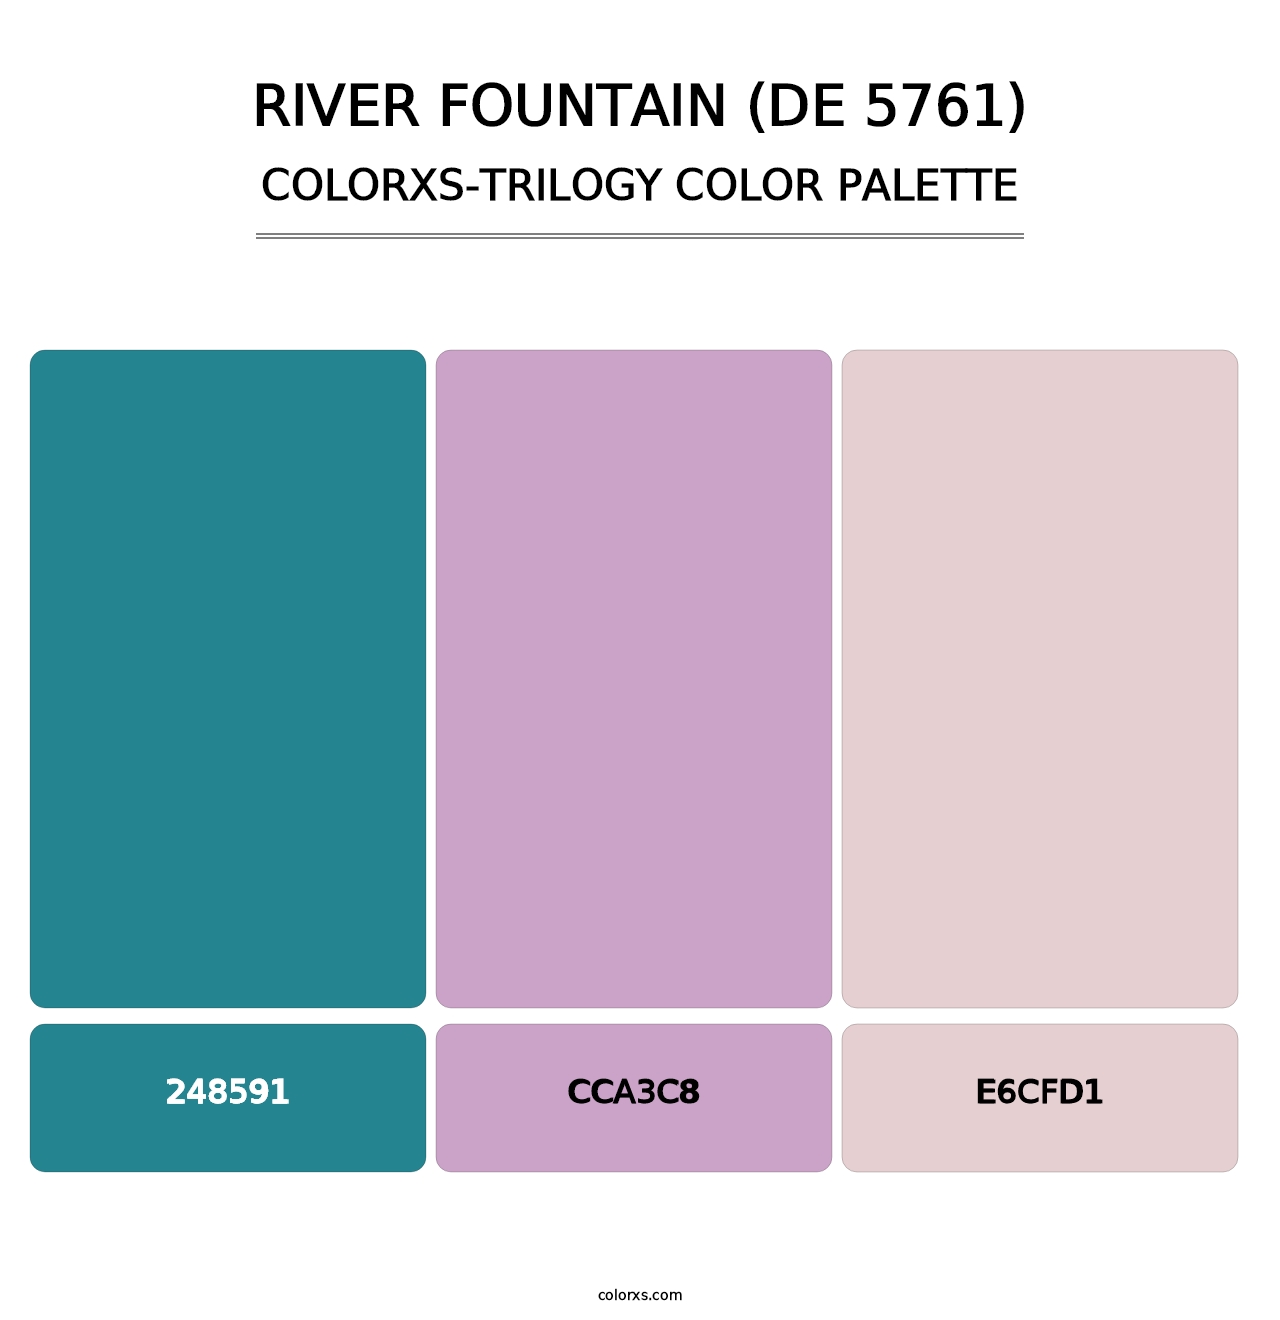 River Fountain (DE 5761) - Colorxs Trilogy Palette